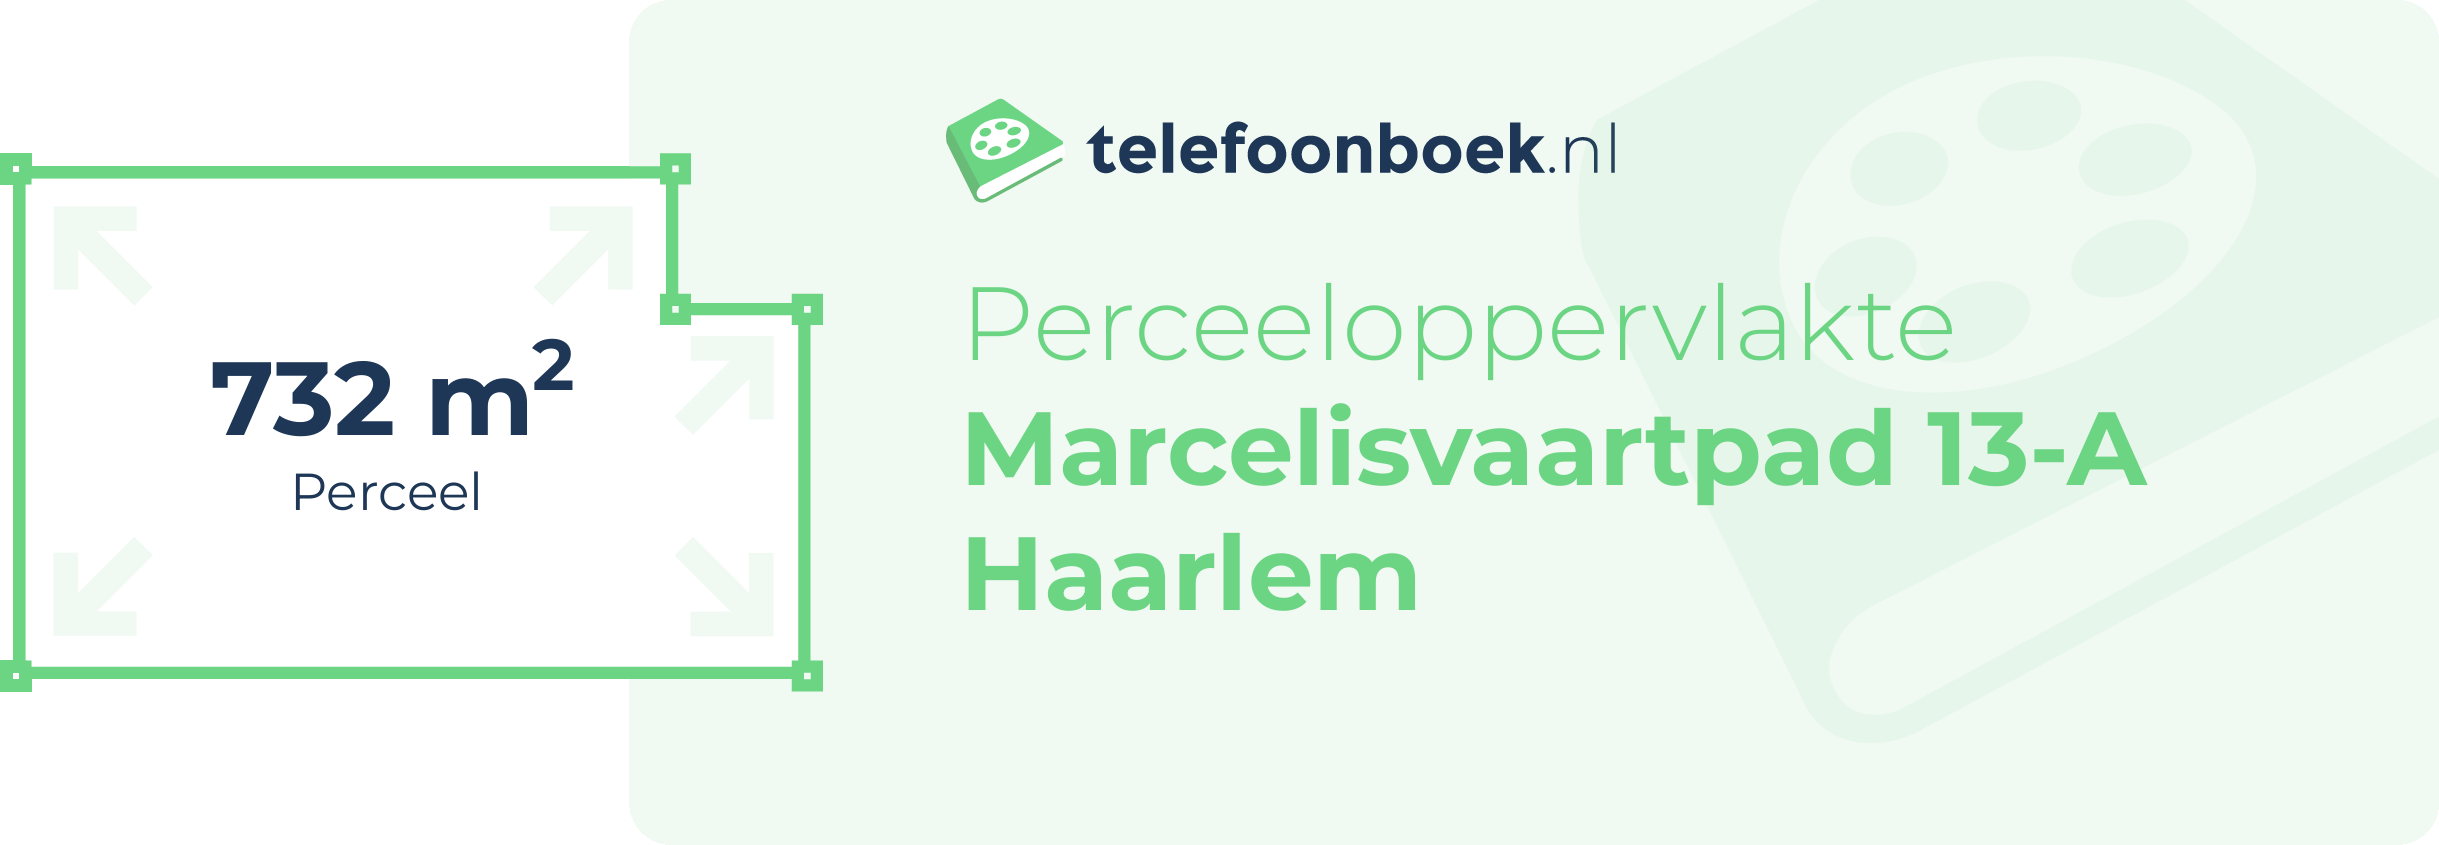 Perceeloppervlakte Marcelisvaartpad 13-A Haarlem